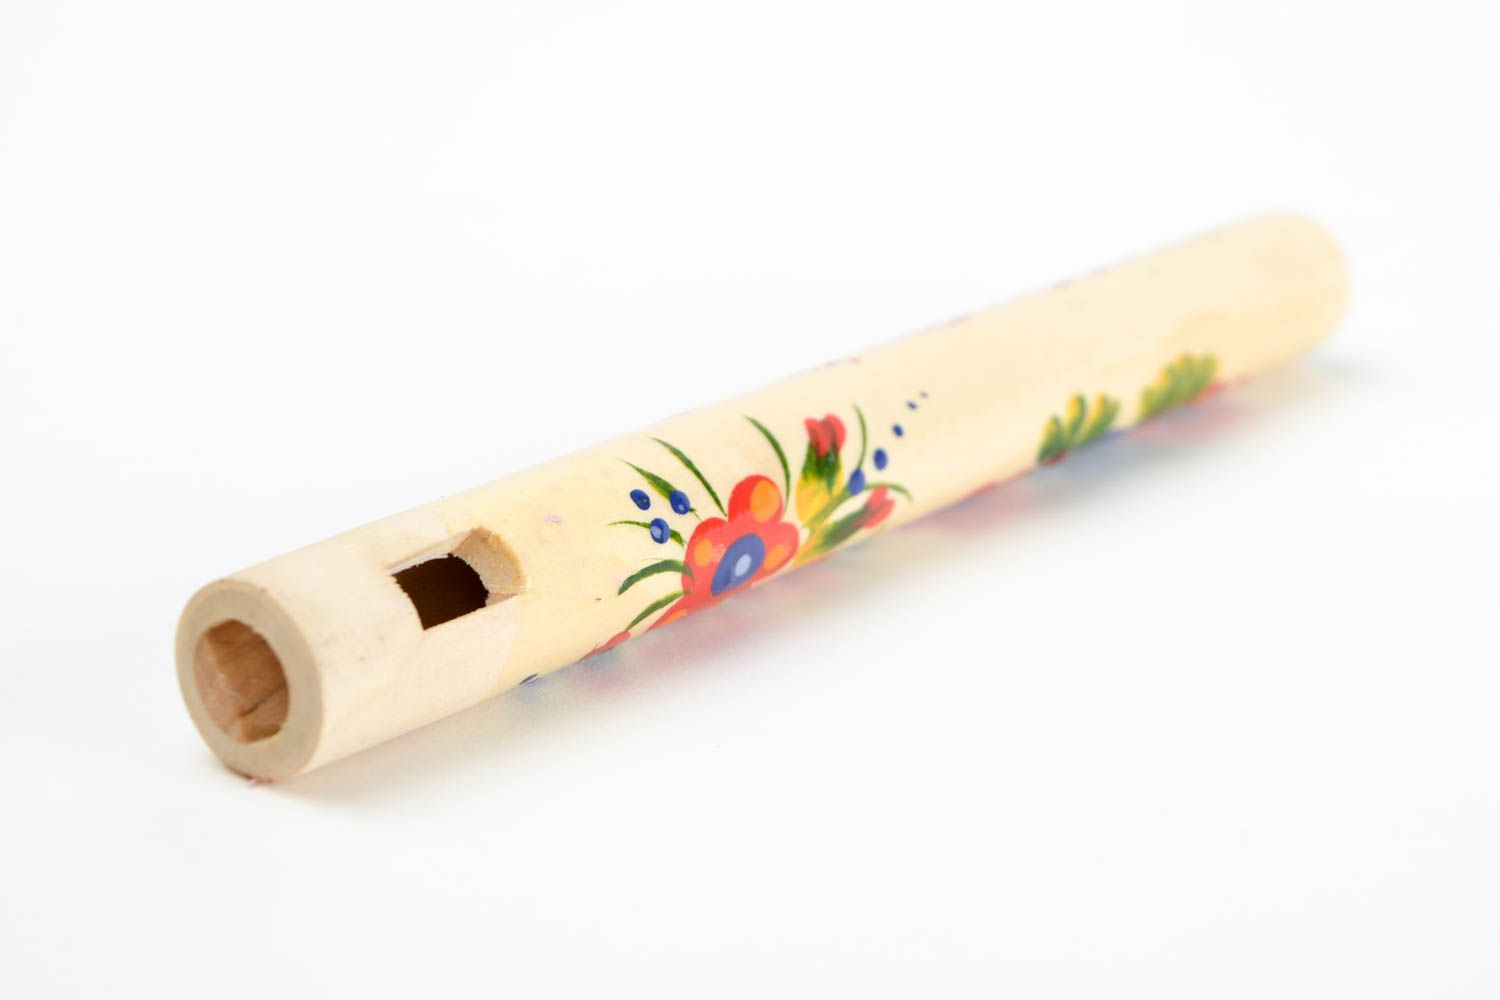 Silbato de madera pintado instrumento musical artesanal souvenir original foto 5